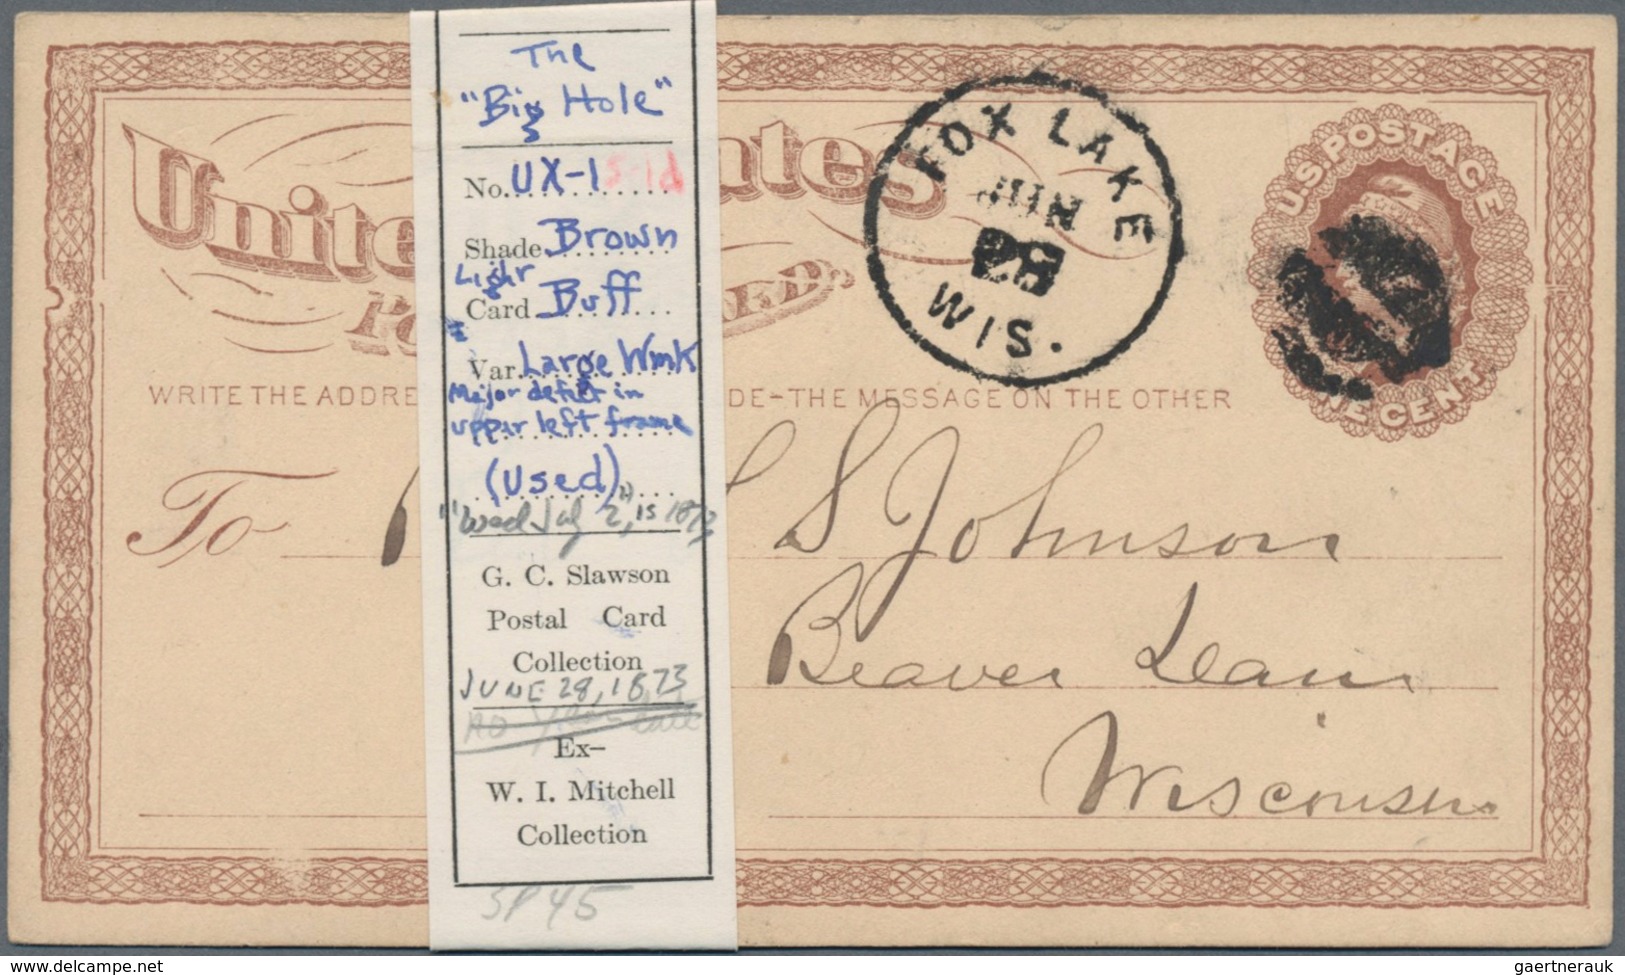 Vereinigte Staaten von Amerika - Ganzsachen: 1873 album with ca. 70 unused and used postal stationer